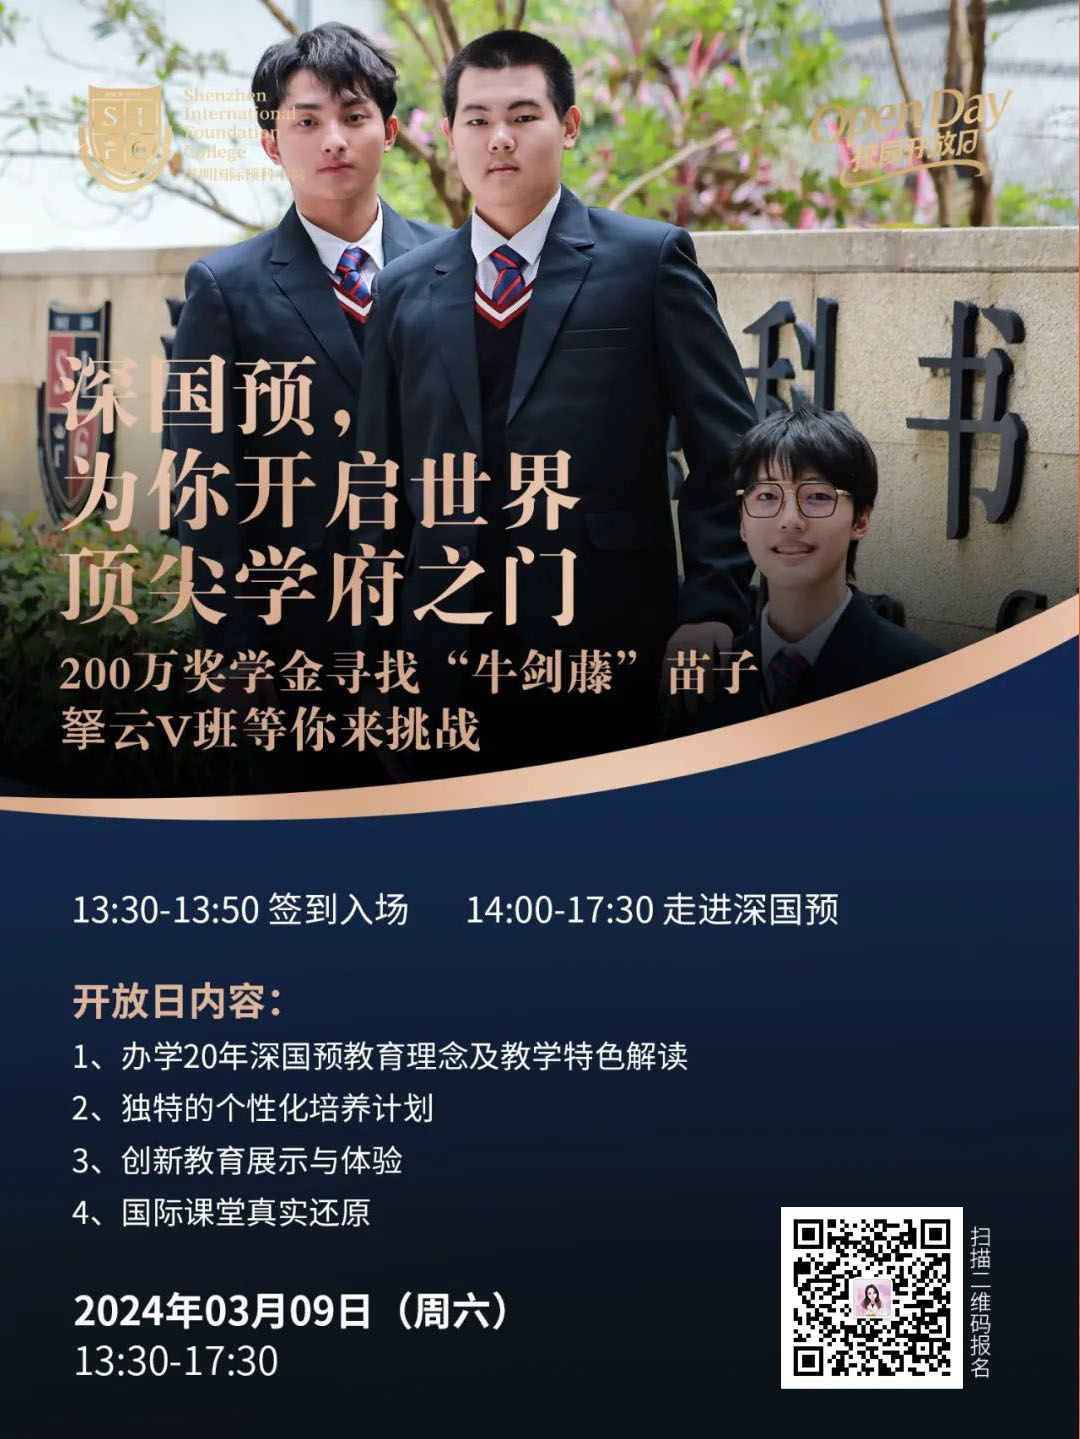 深圳国际预科书院校园开放日